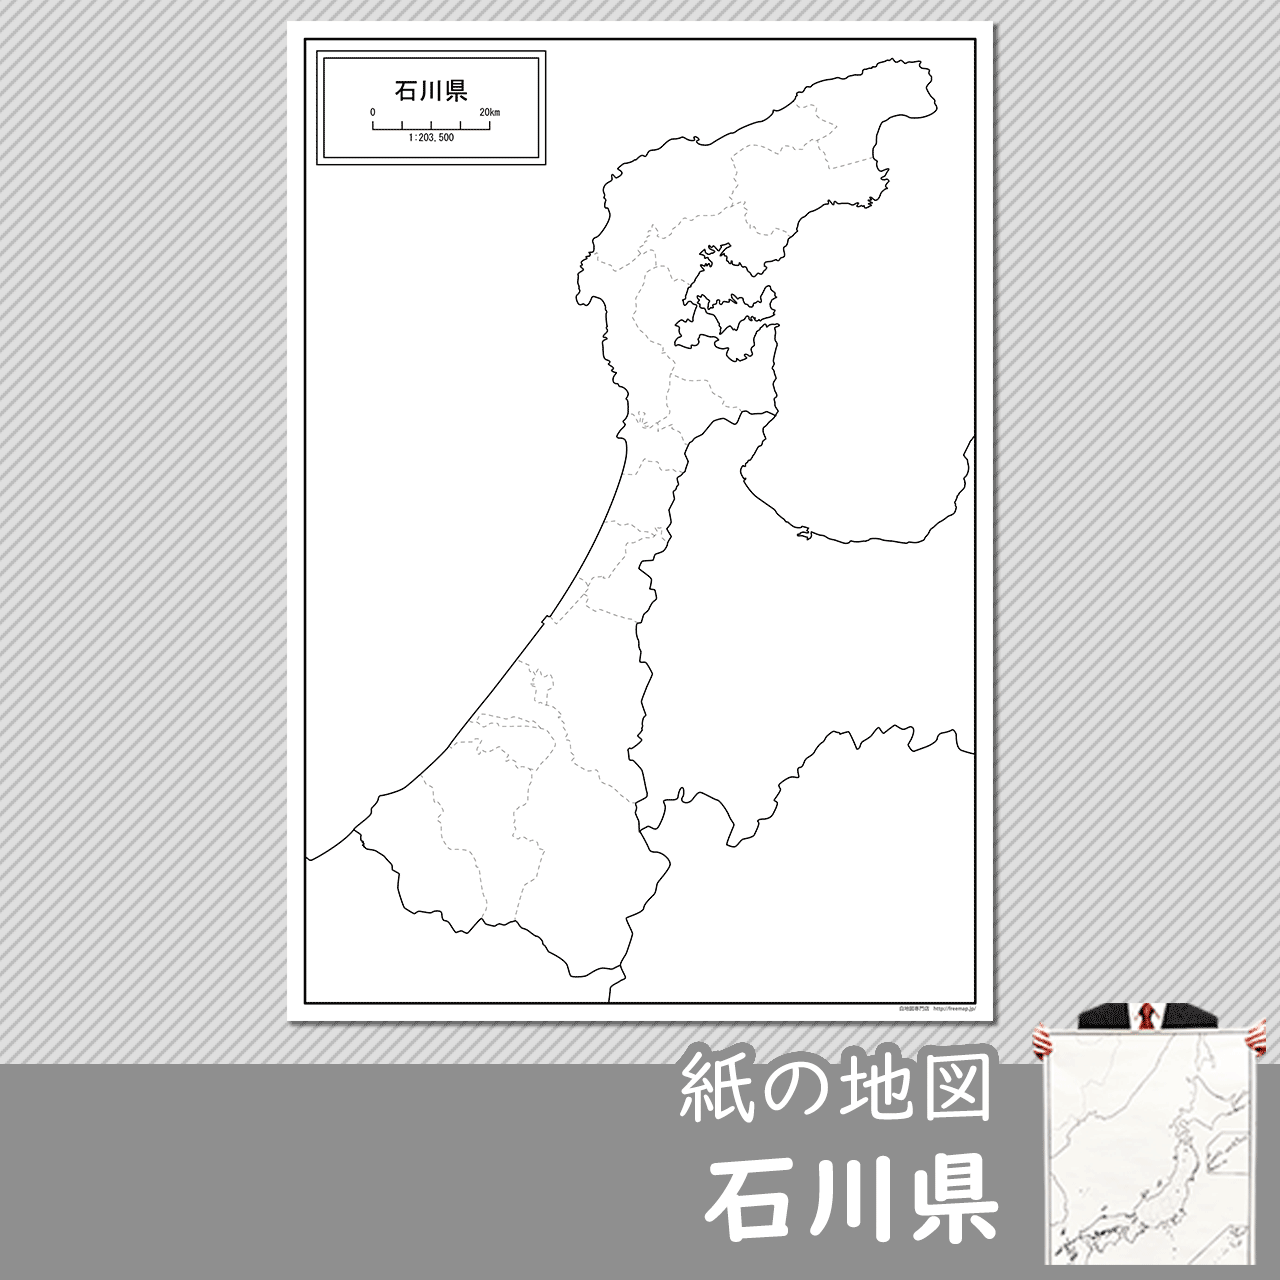 石川県の紙の白地図のサムネイル